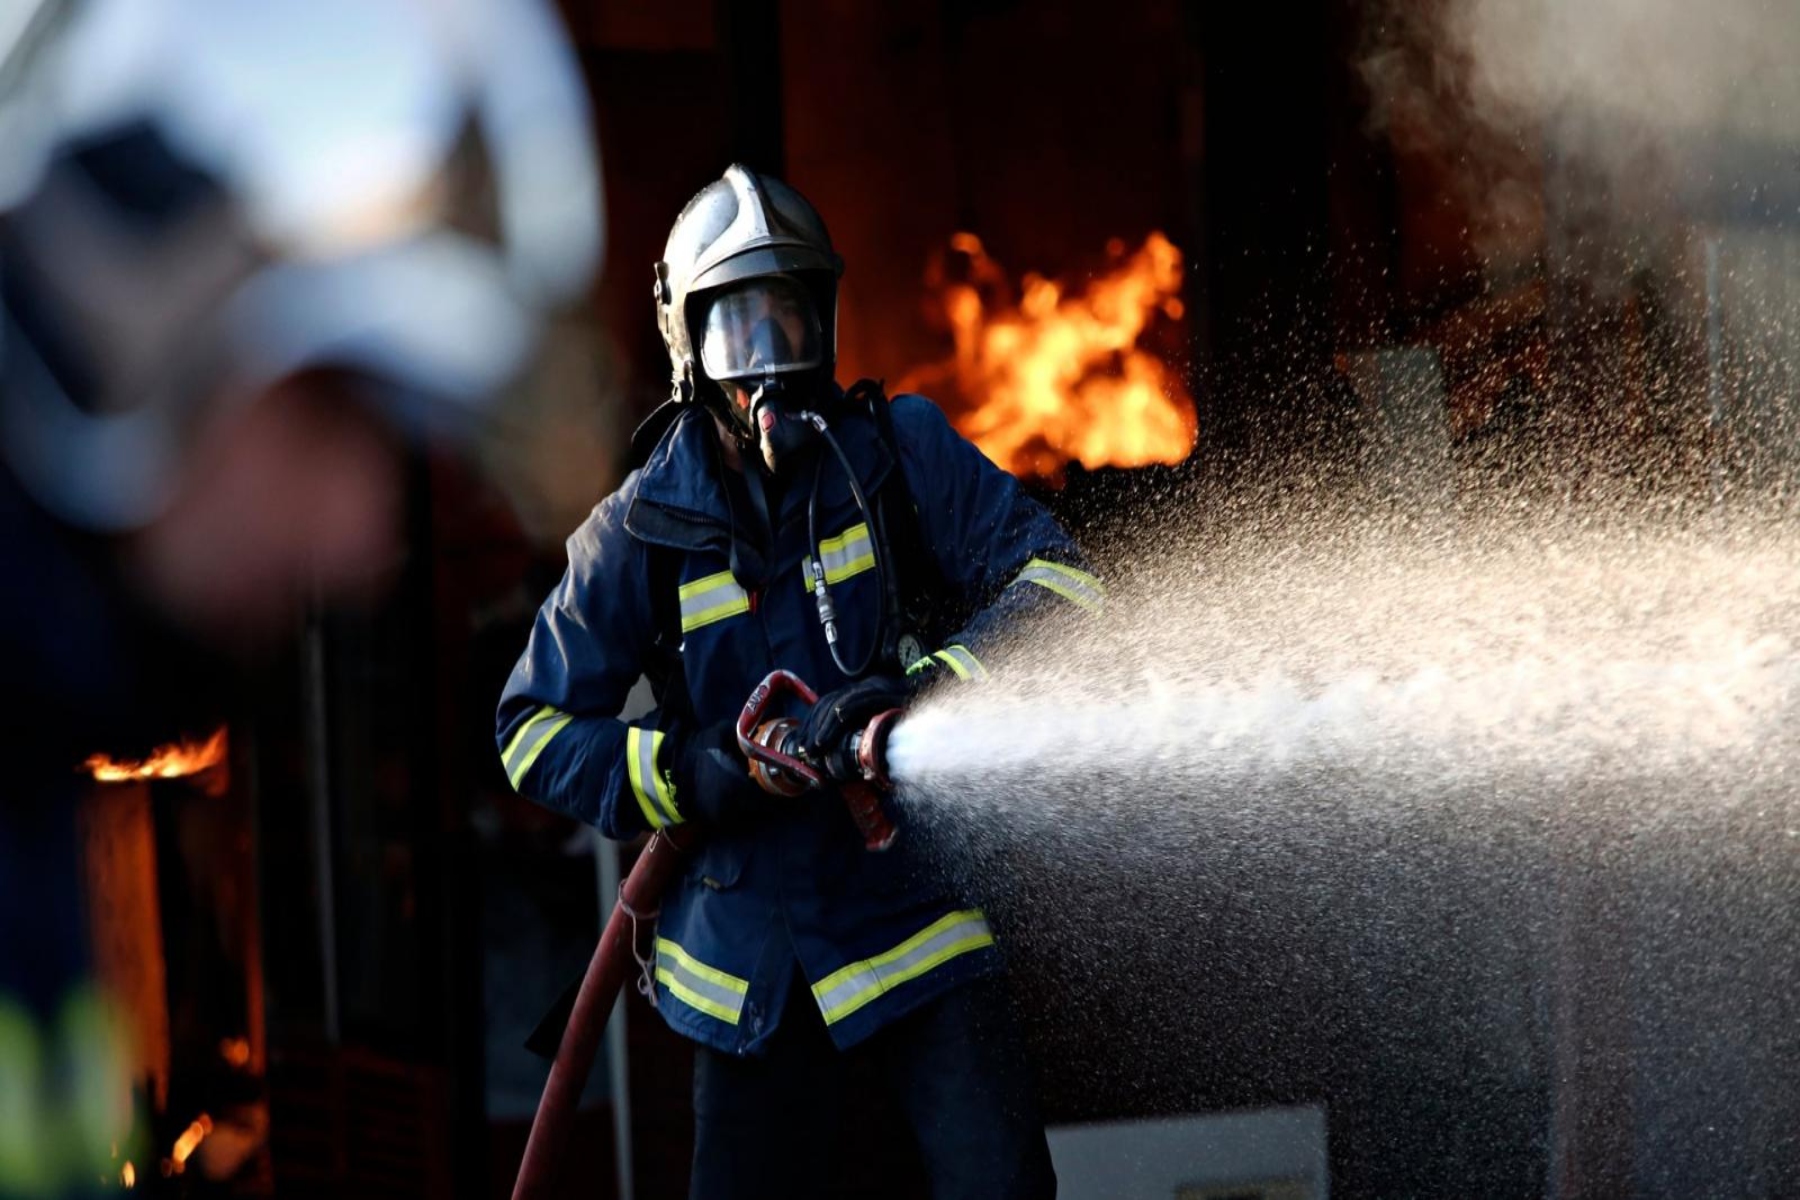 Κίνδυνος πυρκαγιάς 30/8: Παραμένει υψηλός ο κίνδυνος σε πολλές περιοχές και αύριο